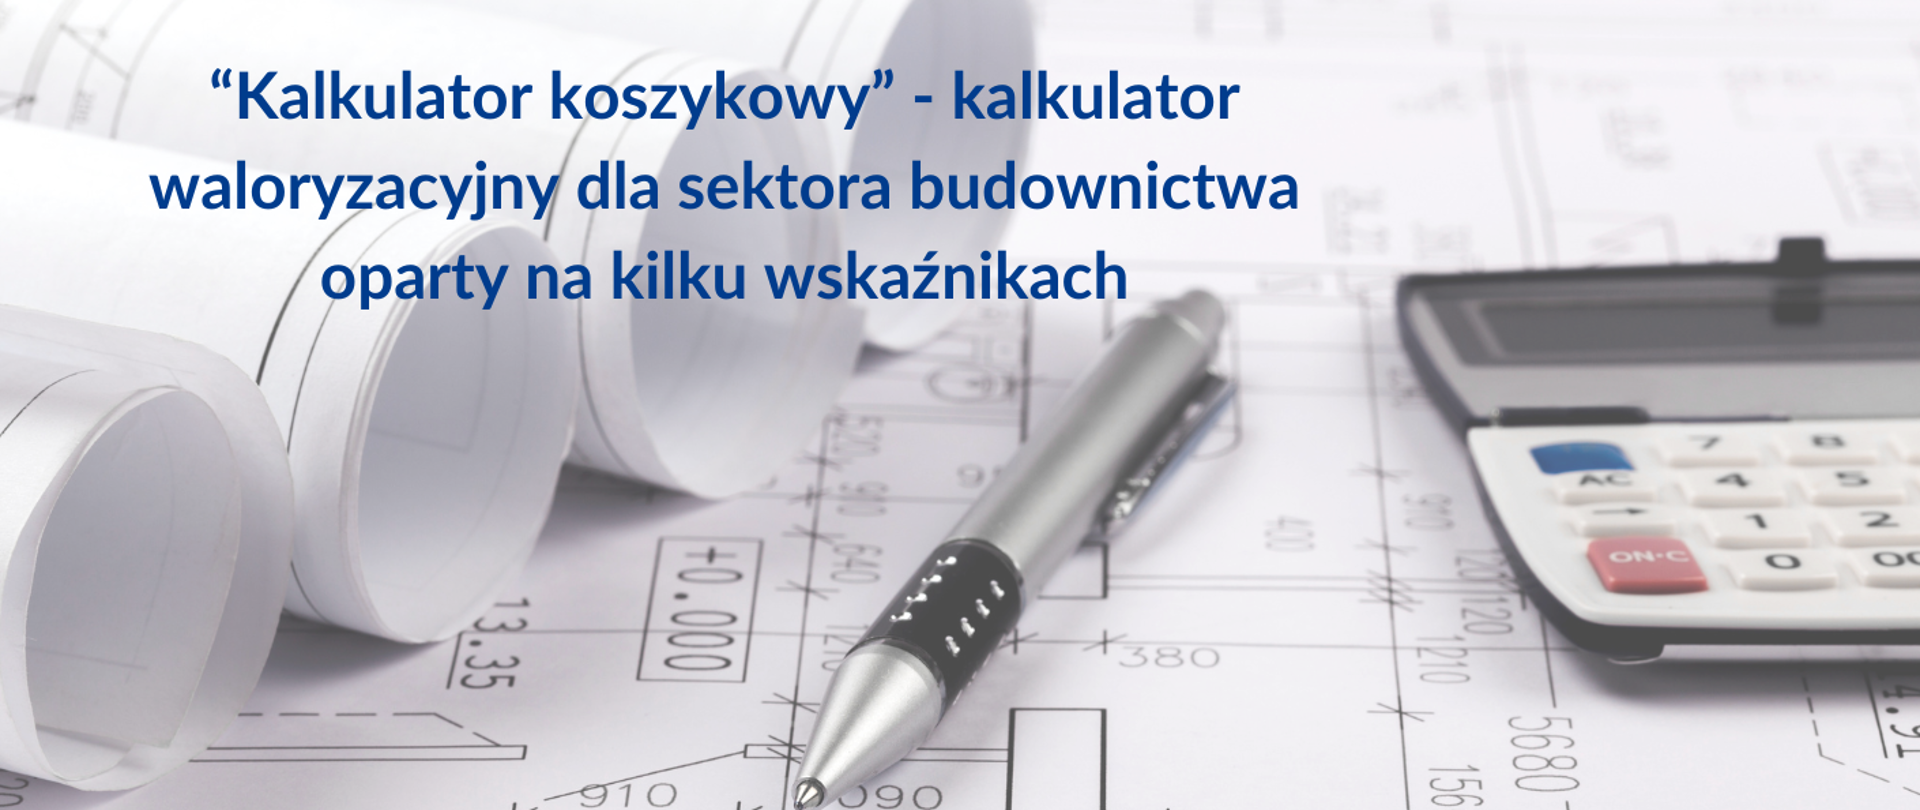 “Kalkulator koszykowy” - kalkulator waloryzacyjny dla sektora budownictwa oparty na kilku wskaźnikach